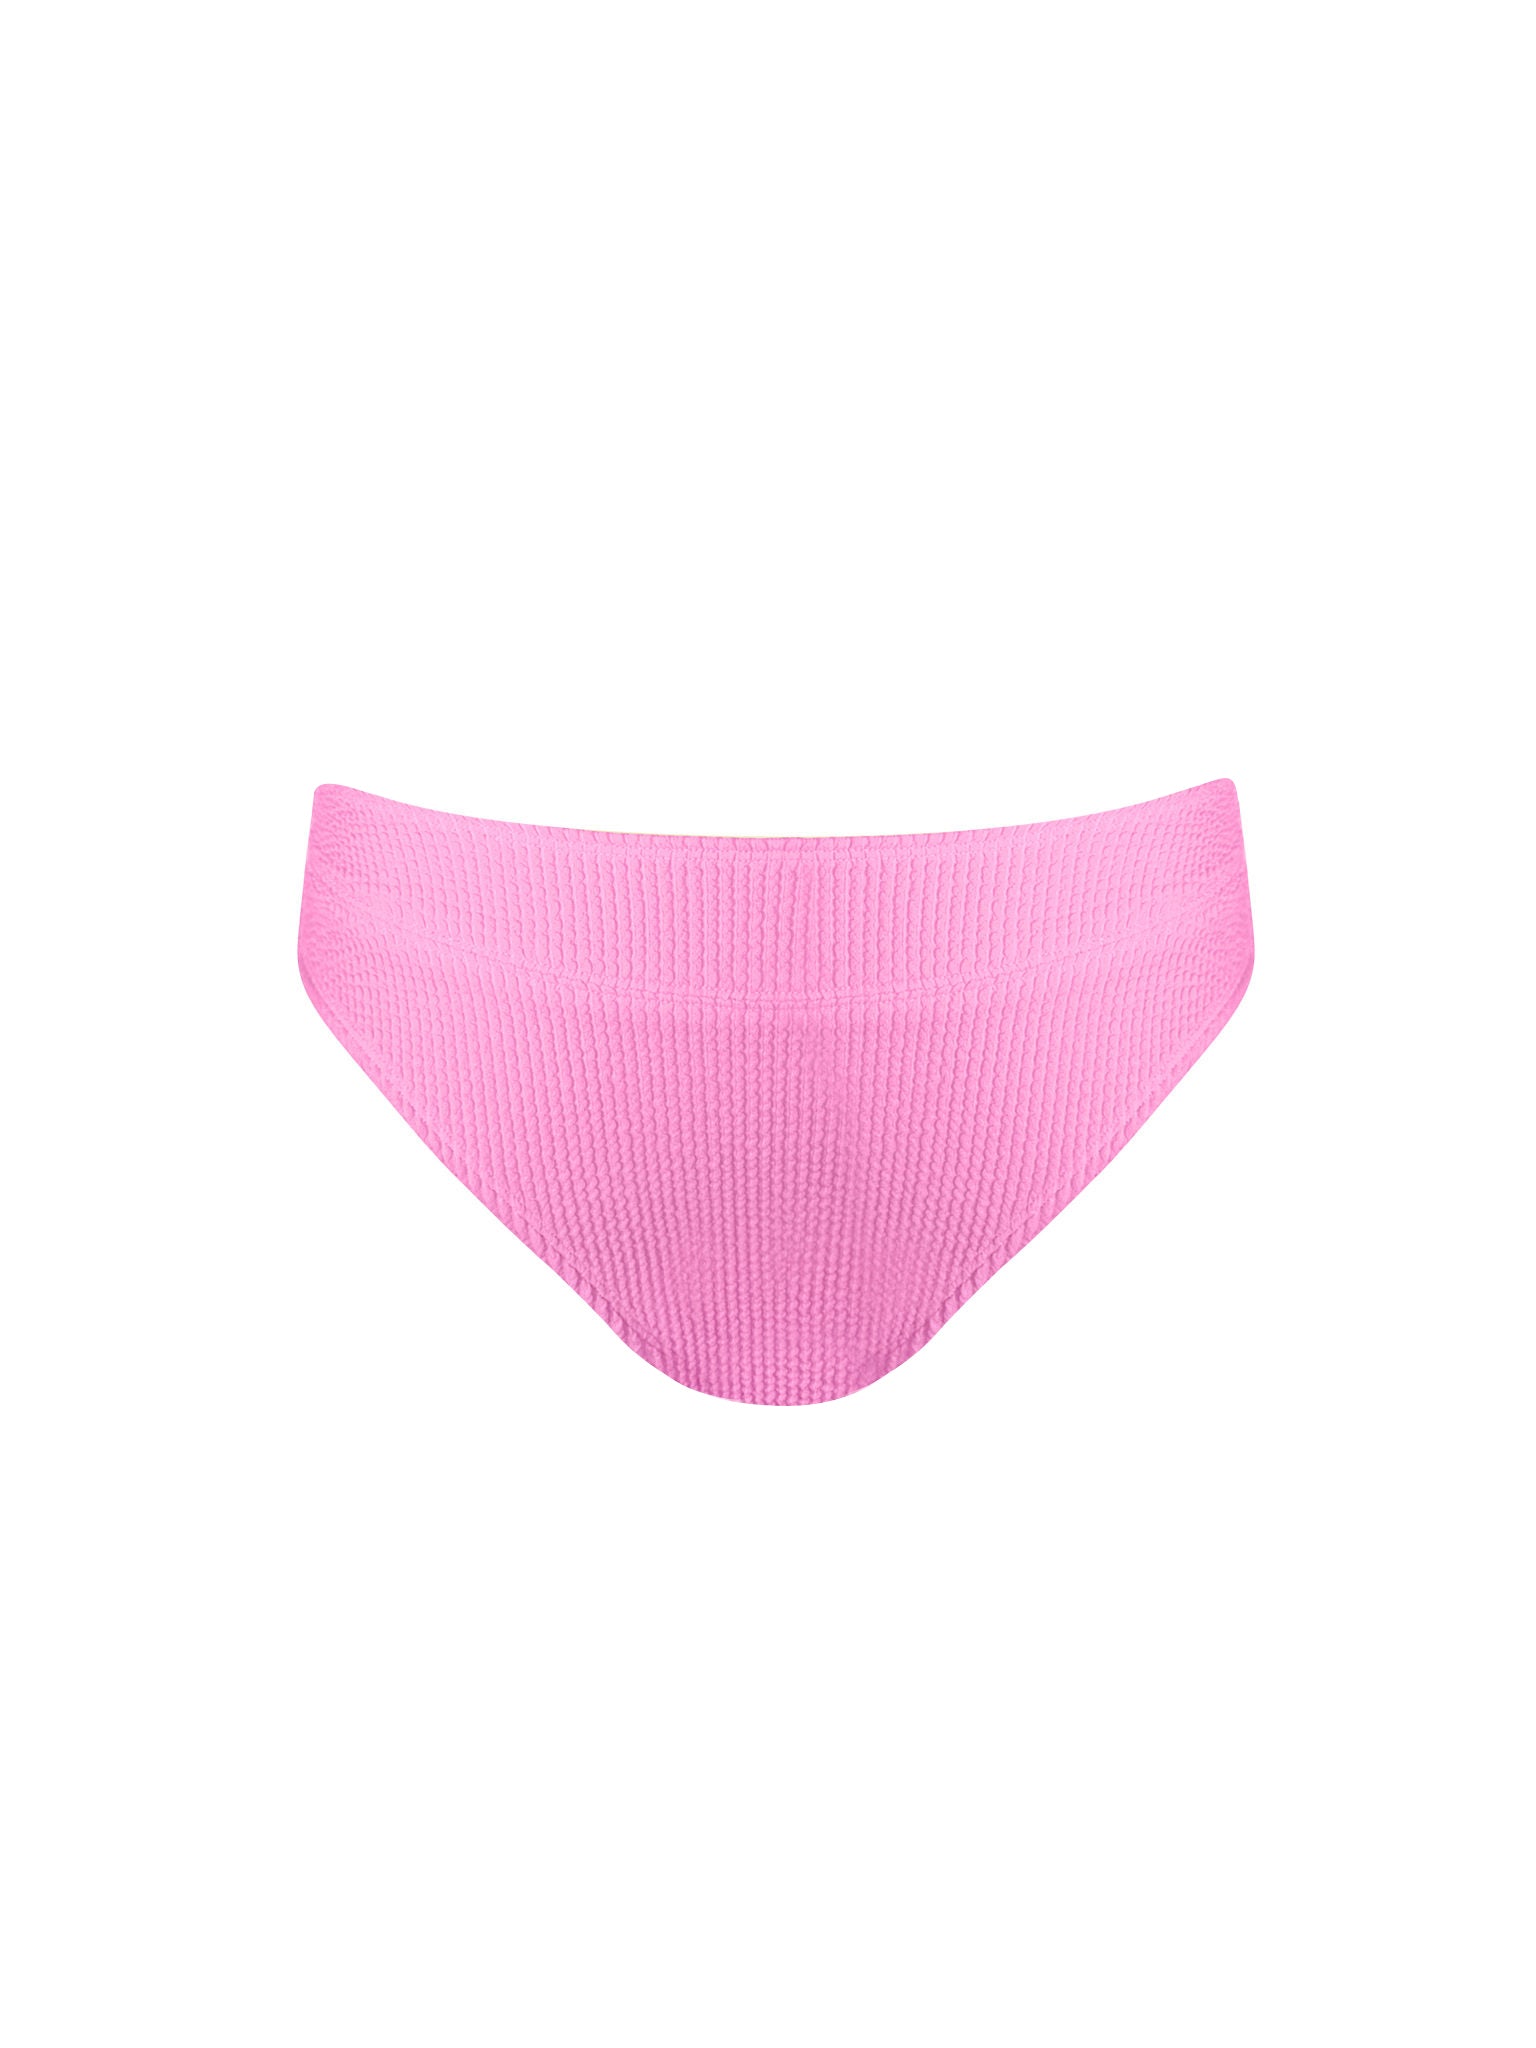 High Waisted Bikini Bottom - Pink